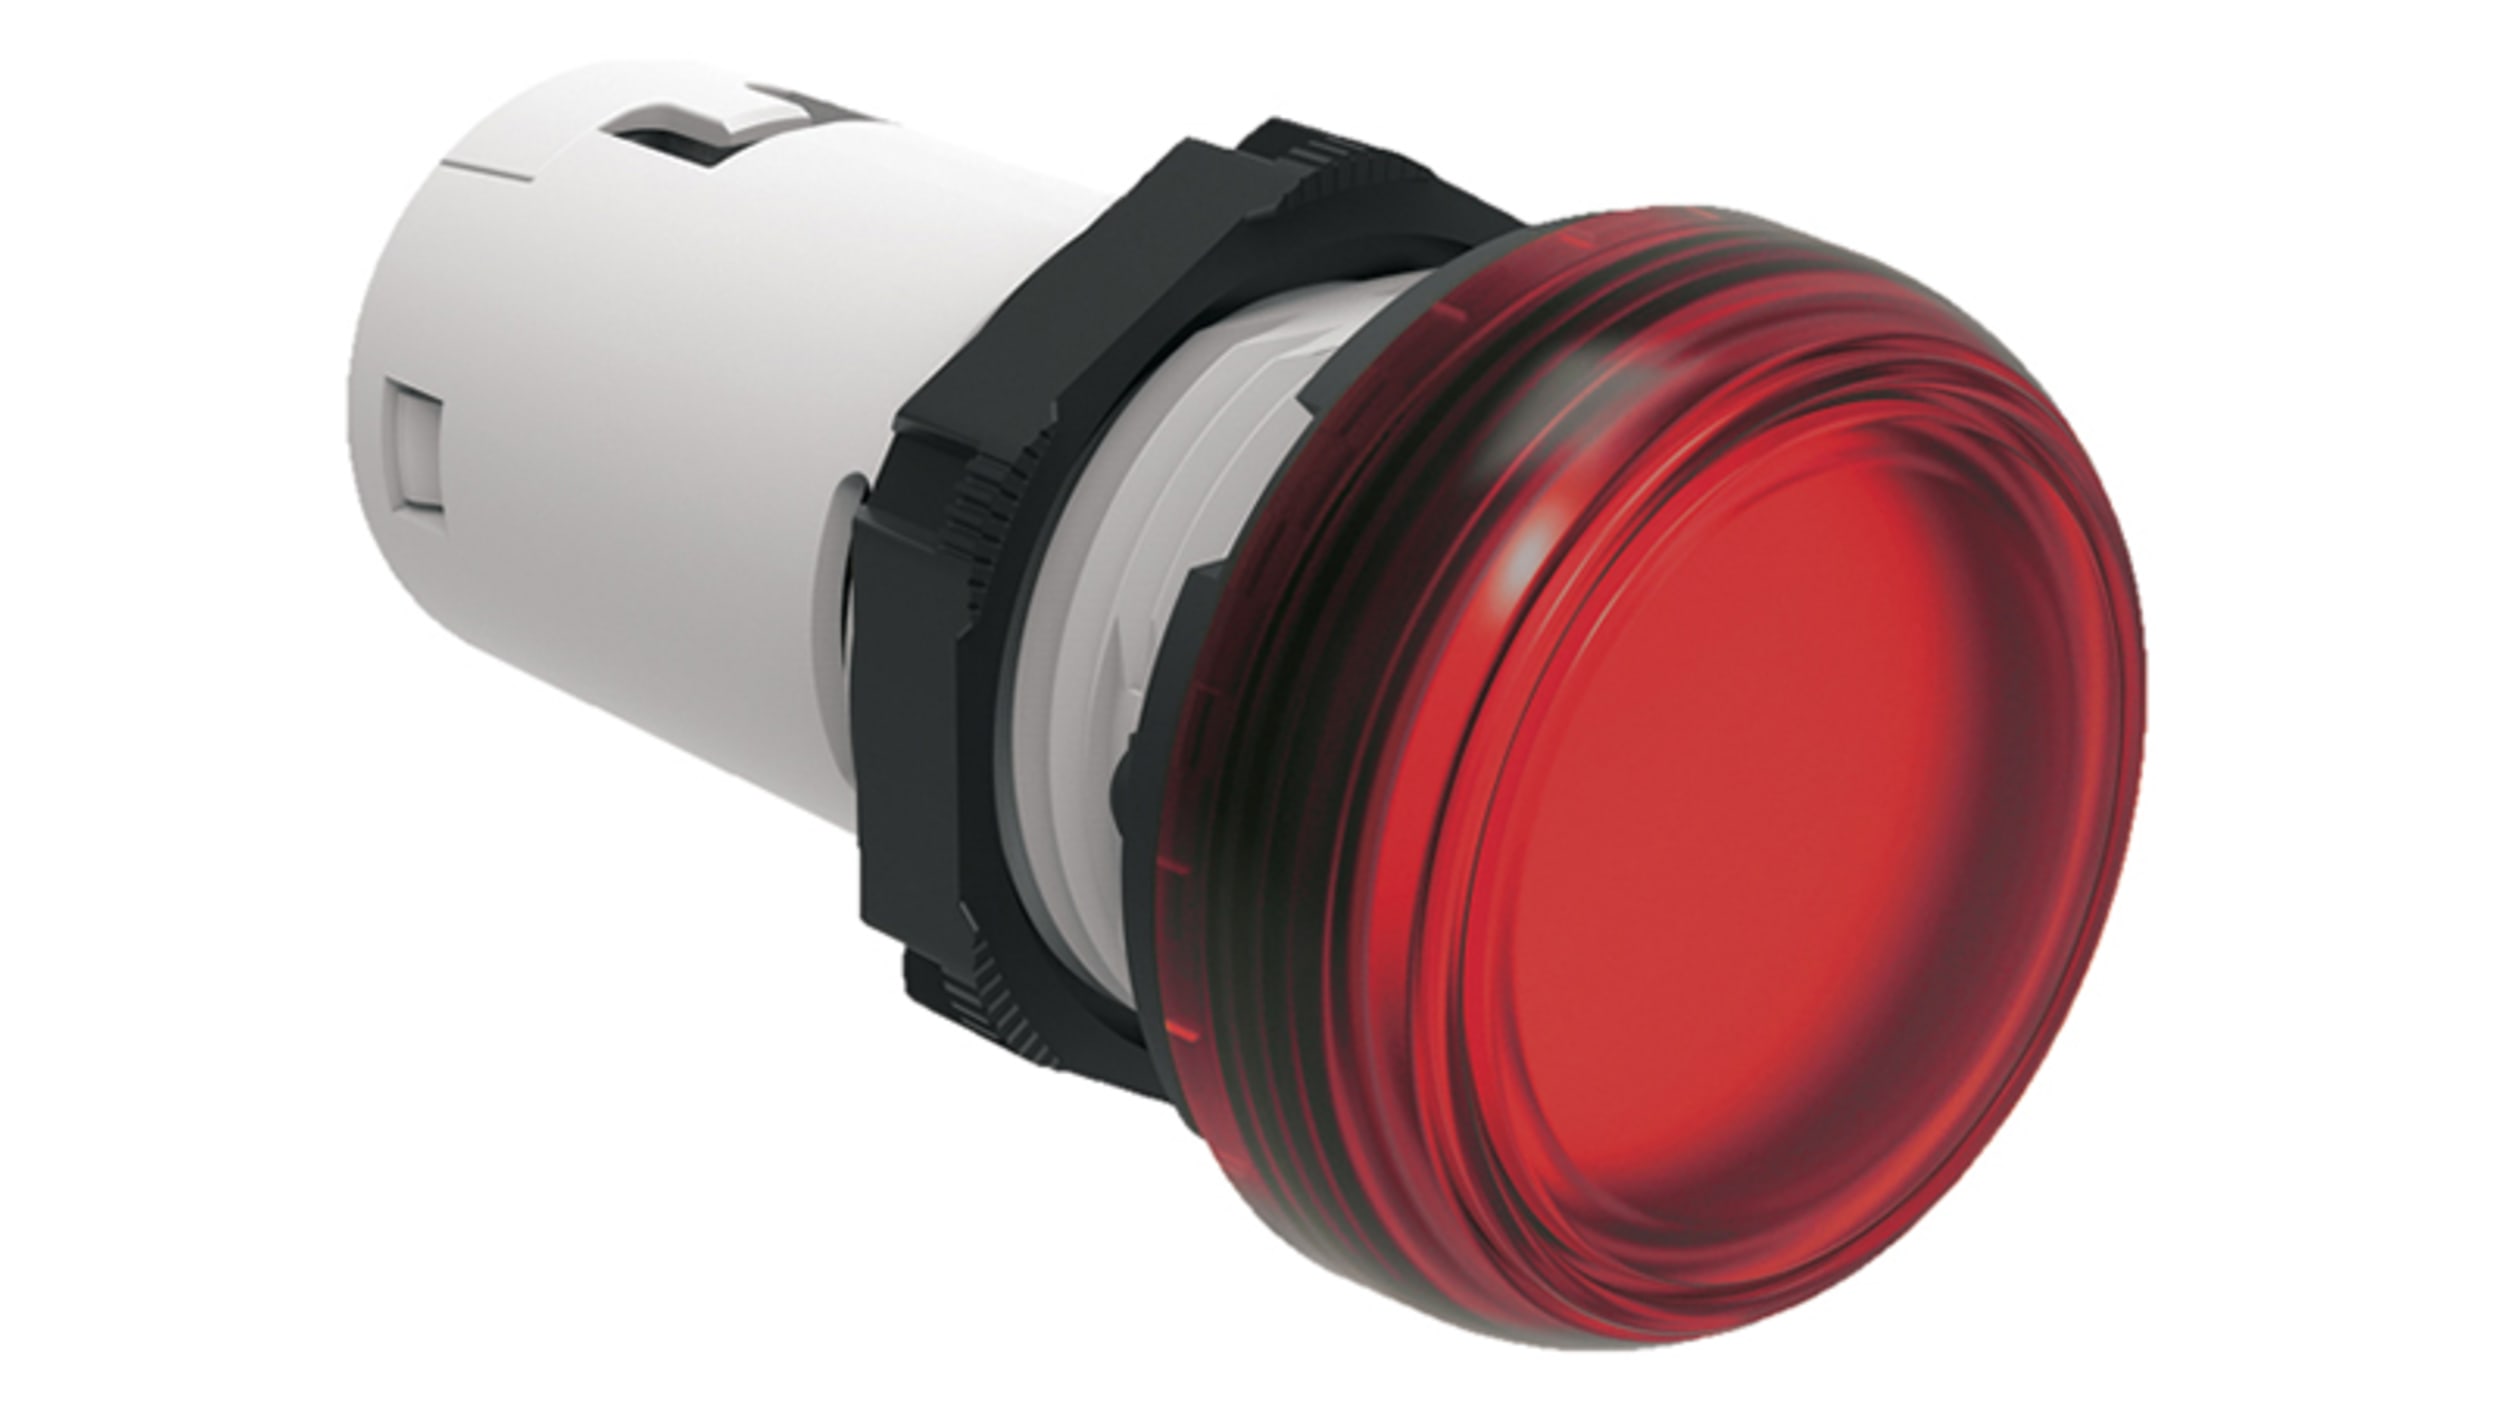 SWITCHTRONIX - Voyant LED 8 mm 220 V Rouge - Chrome